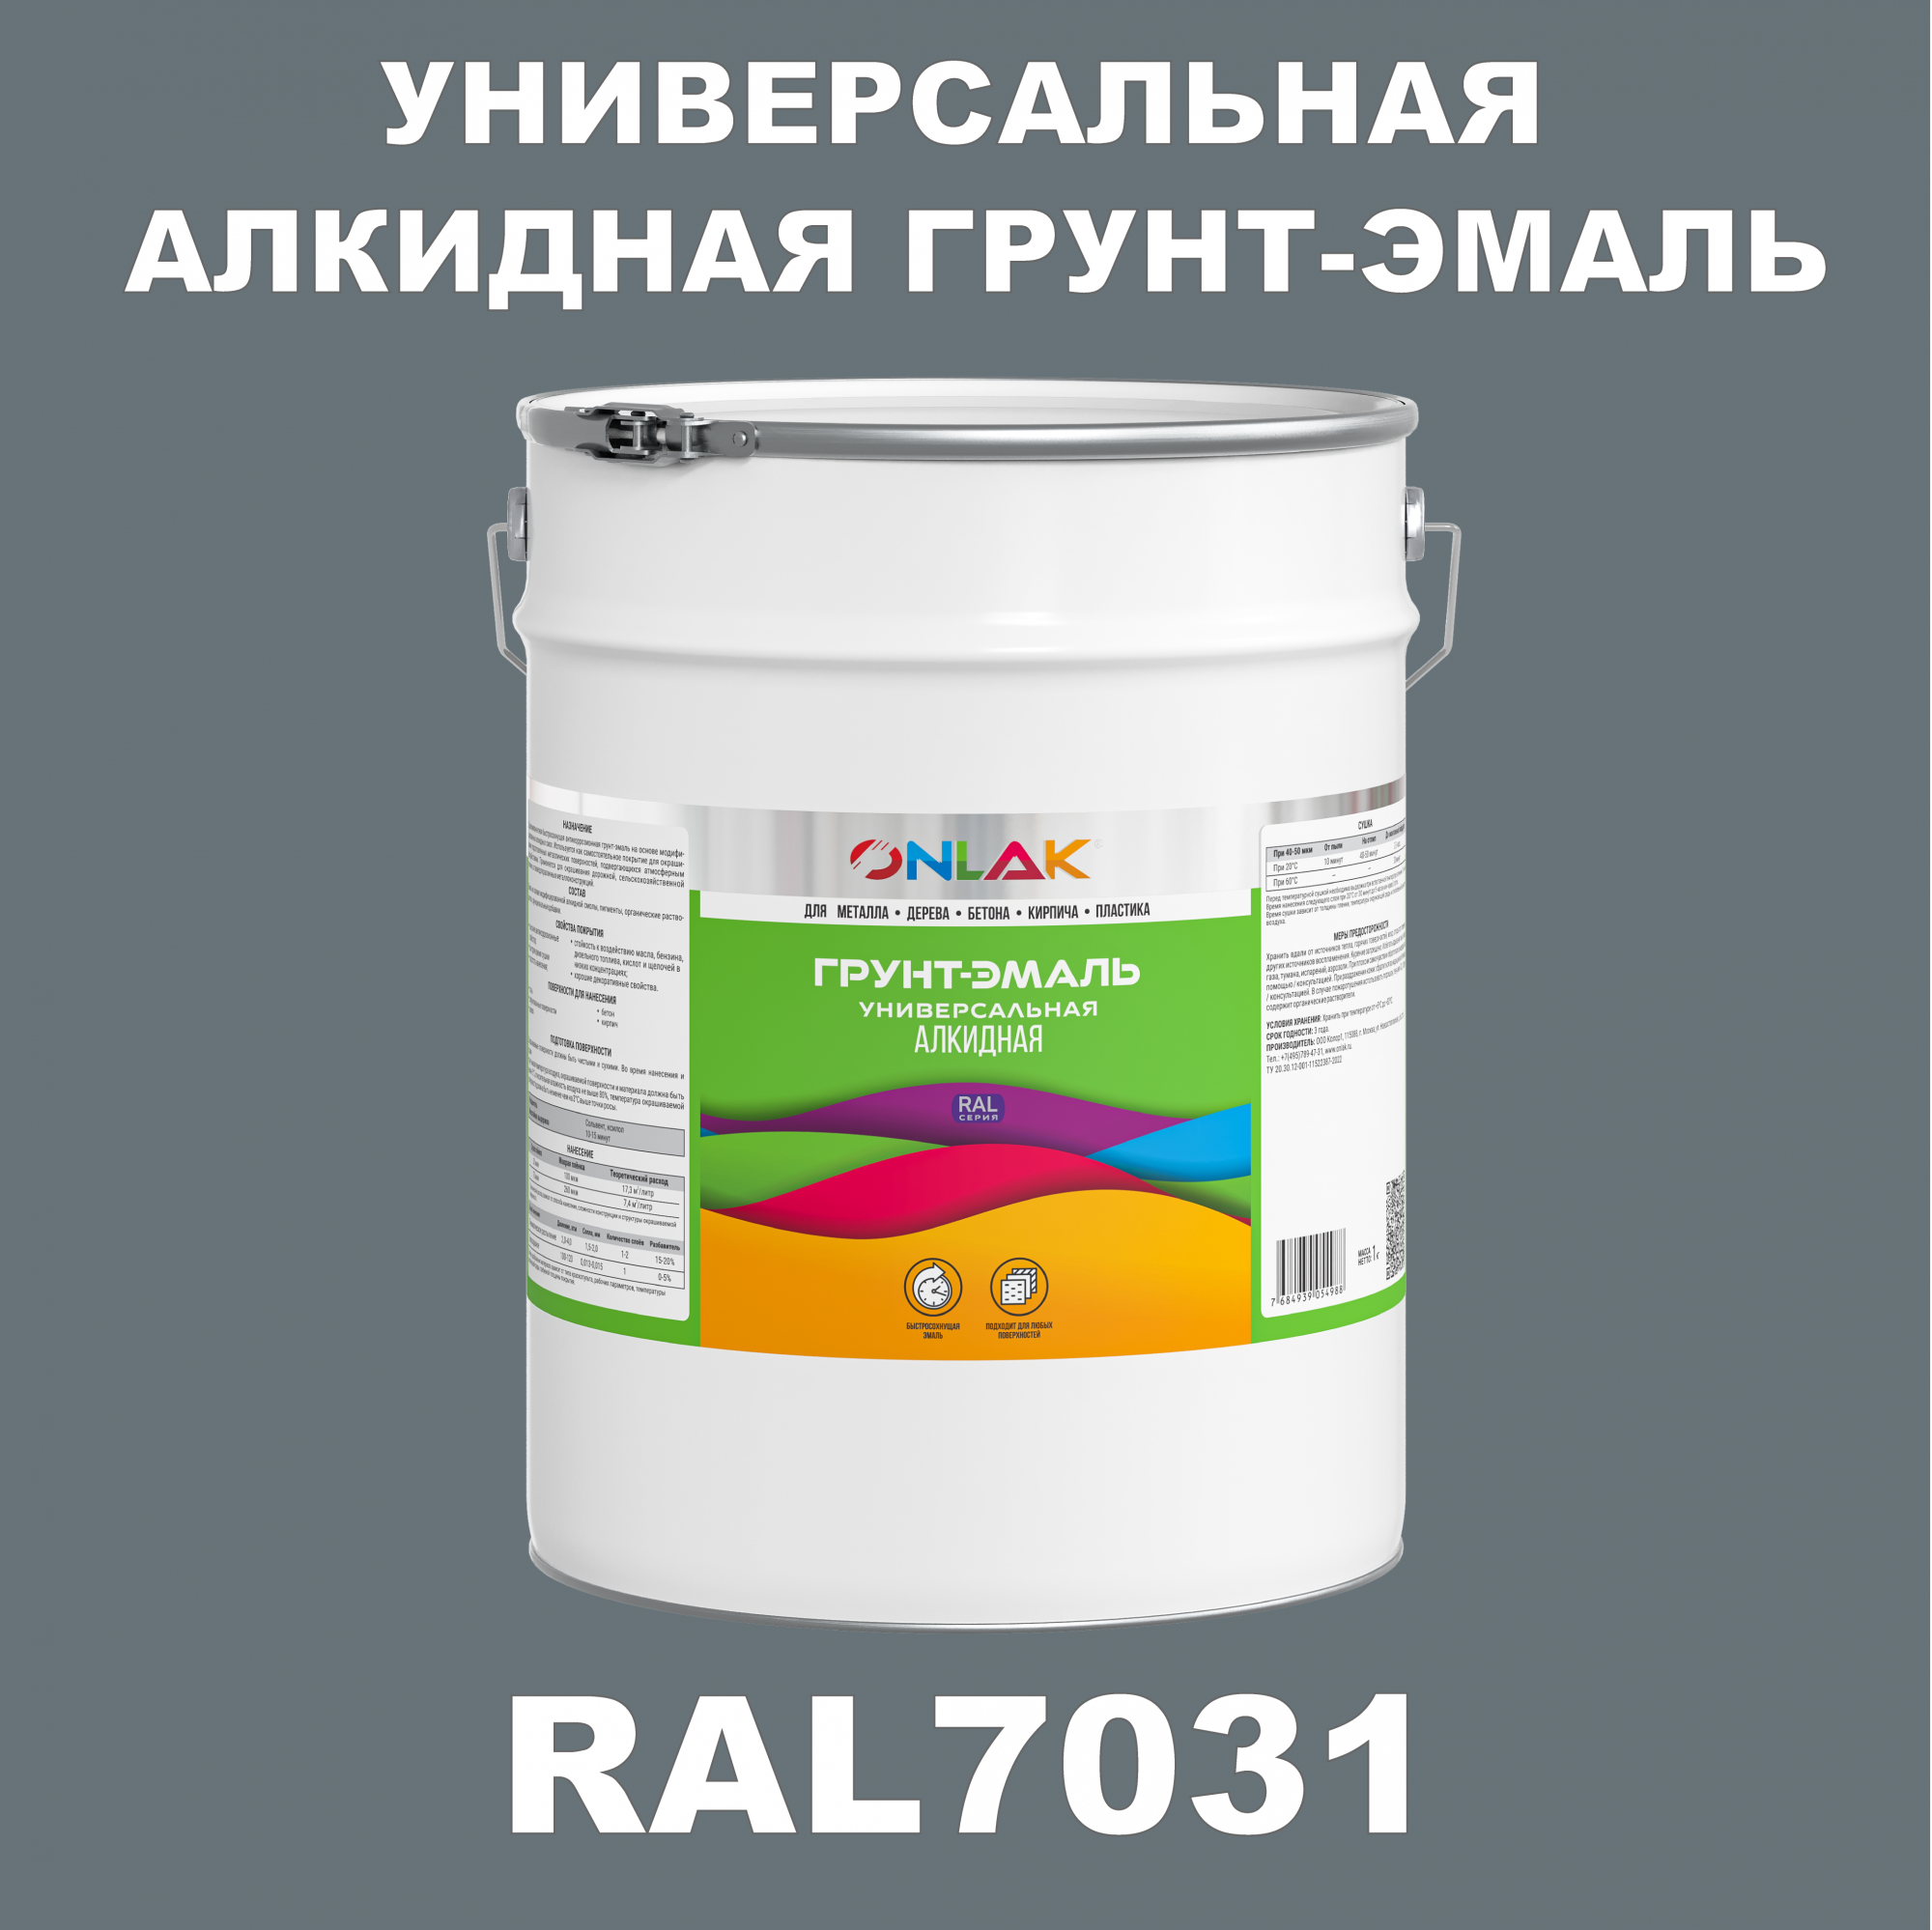 Грунт-эмаль ONLAK 1К RAL7031 антикоррозионная алкидная по металлу по ржавчине 20 кг грунт эмаль skladno по ржавчине алкидная желтая 1 8 кг